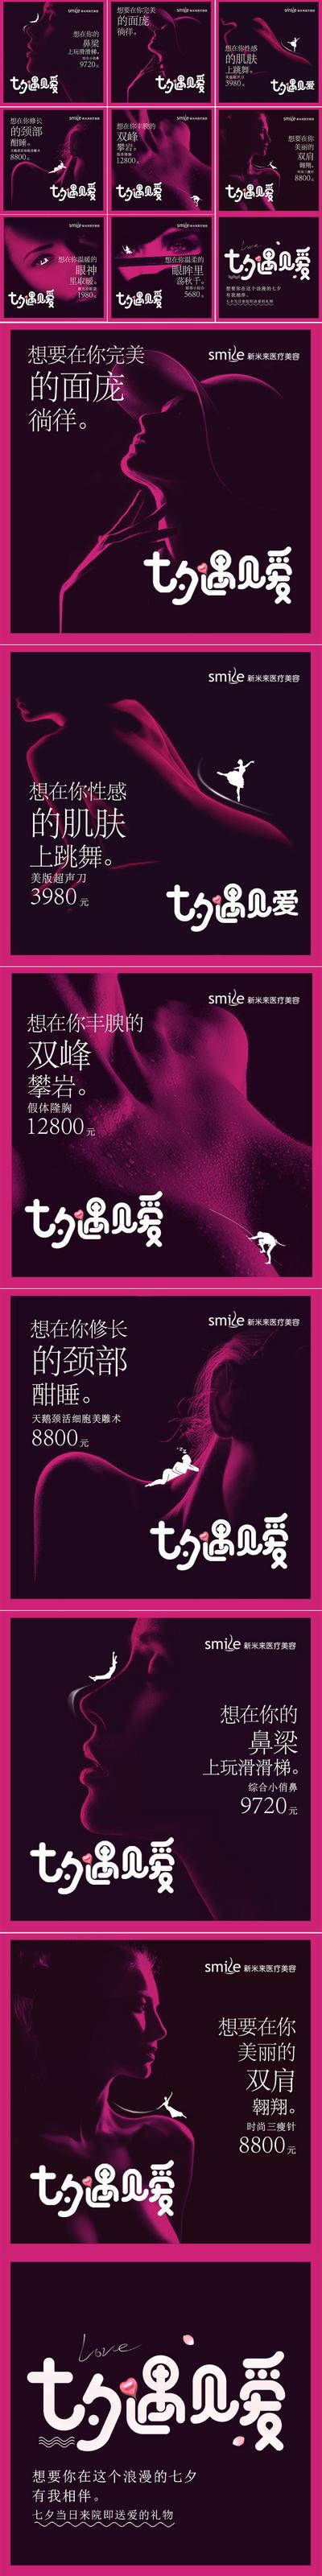 南门网 海报 医美 中国传统节日 七夕  情人节   促销  九宫格  创意  美容